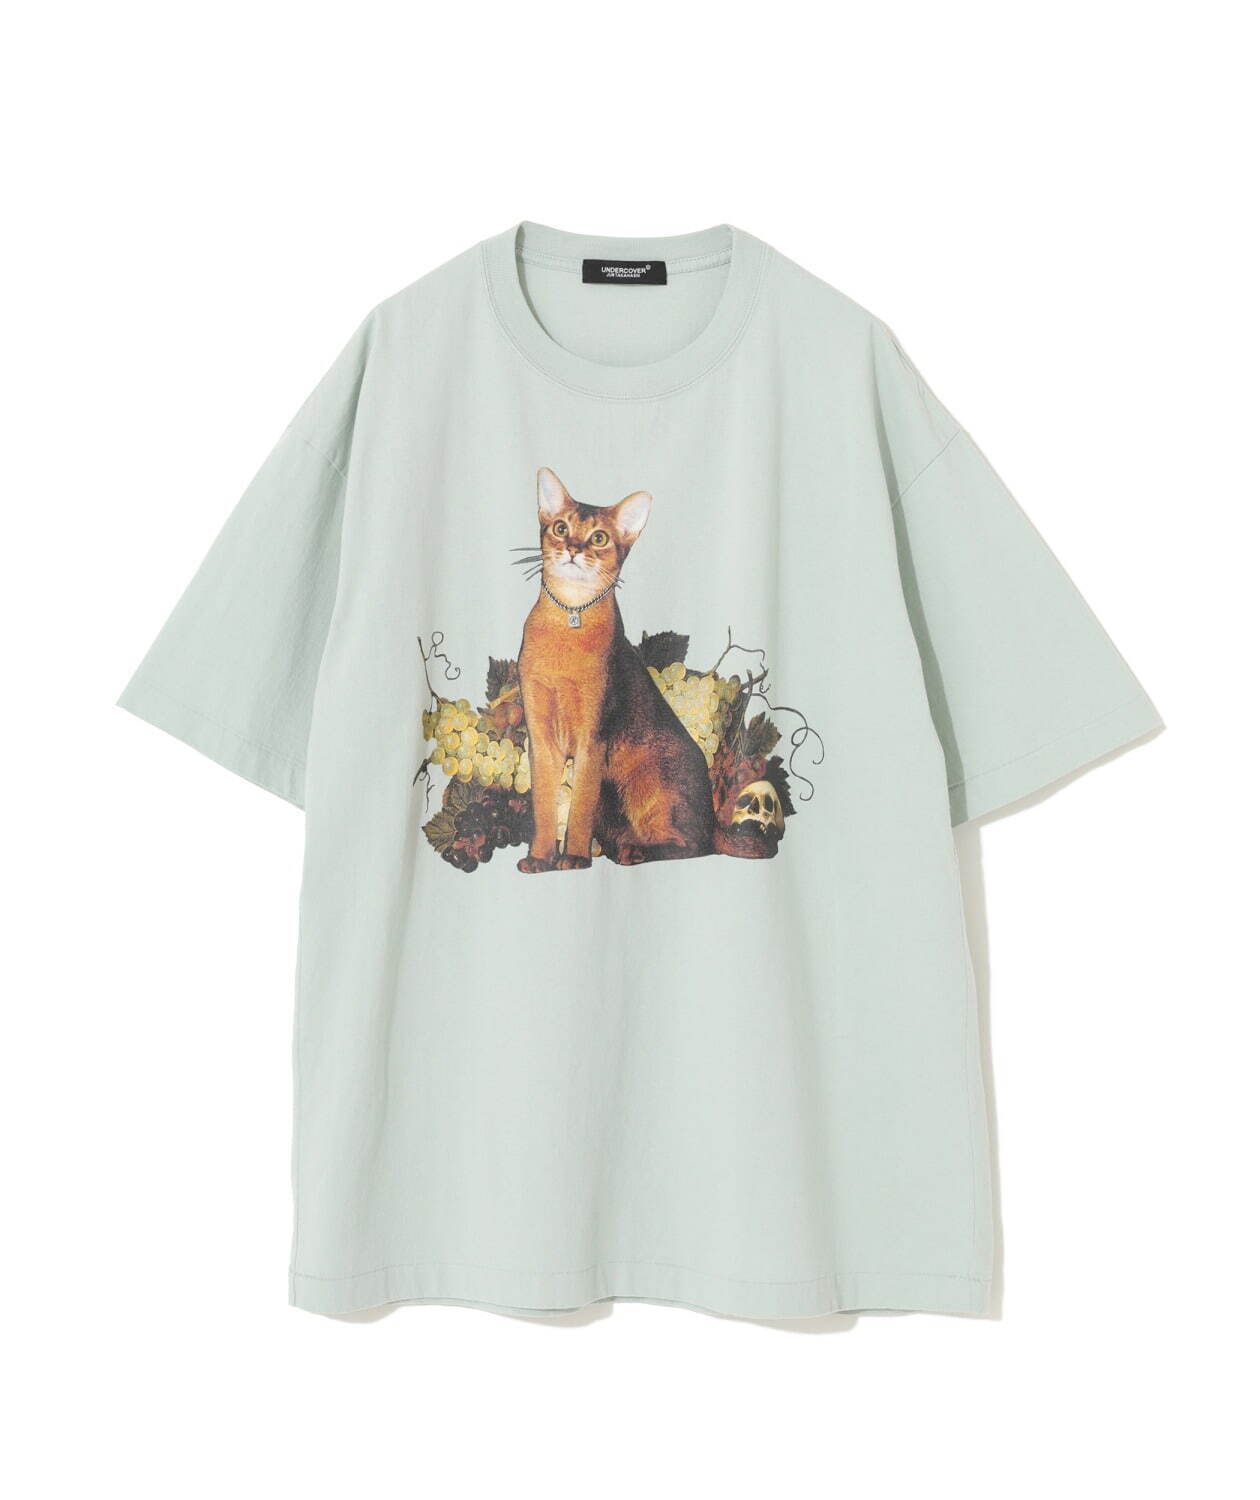 アンダーカバー新作“花・鳥・蝶”のビーズ刺繍Tシャツ、猫の